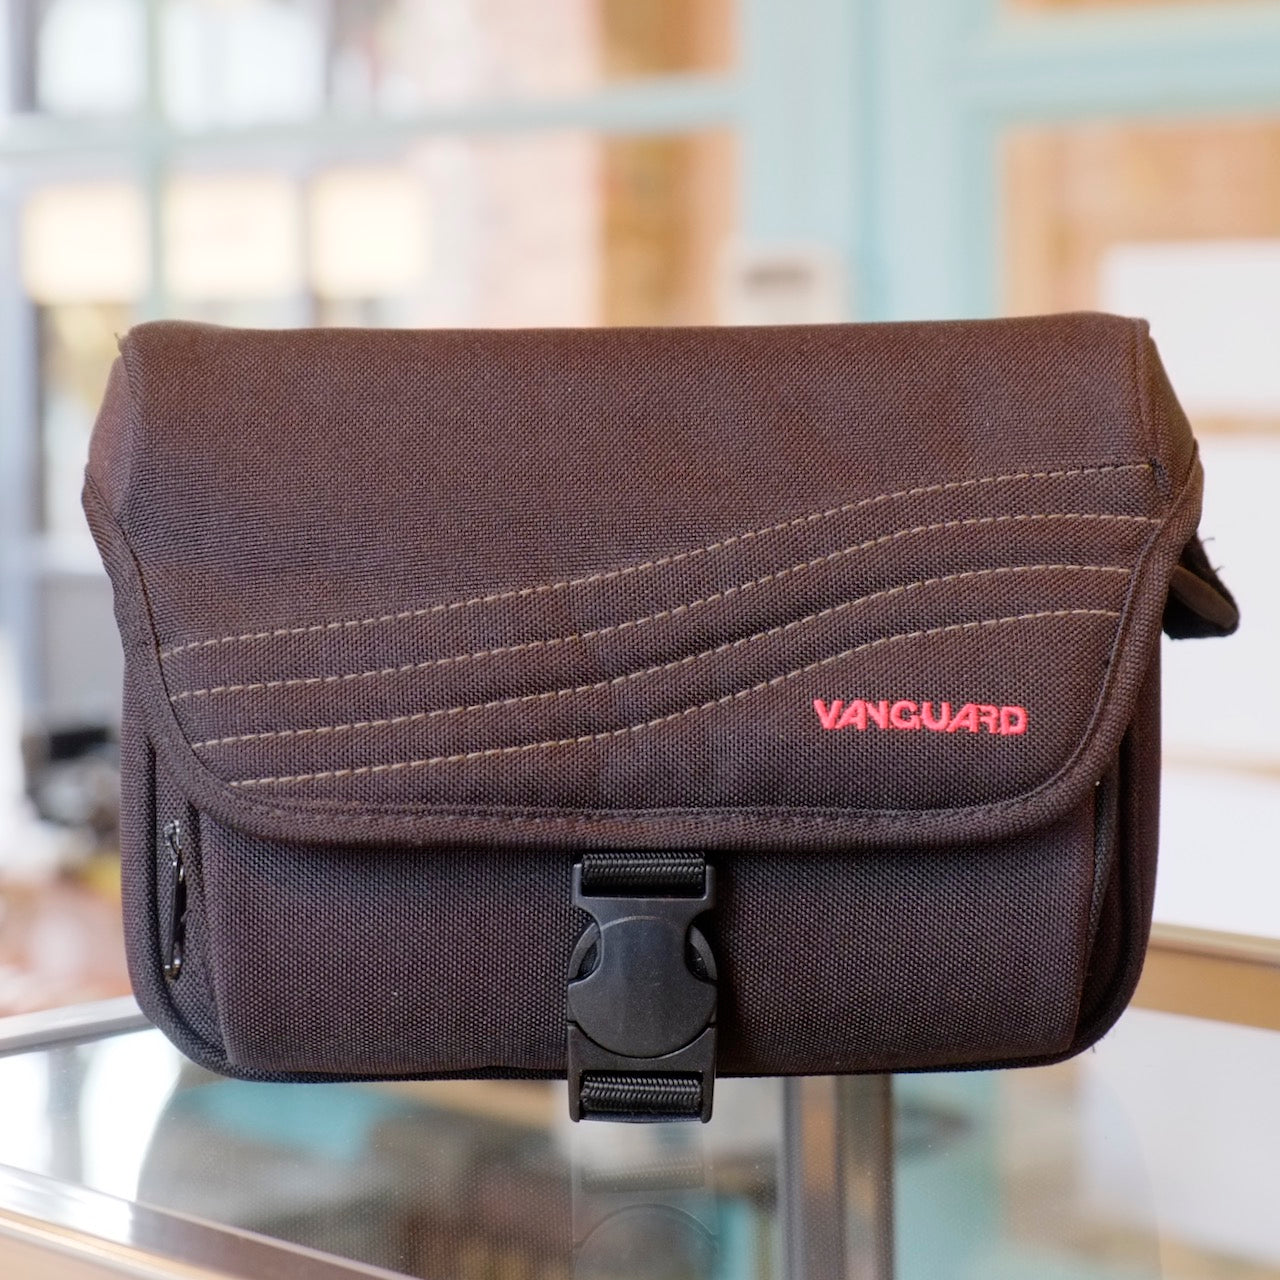 Vanguard camera bag